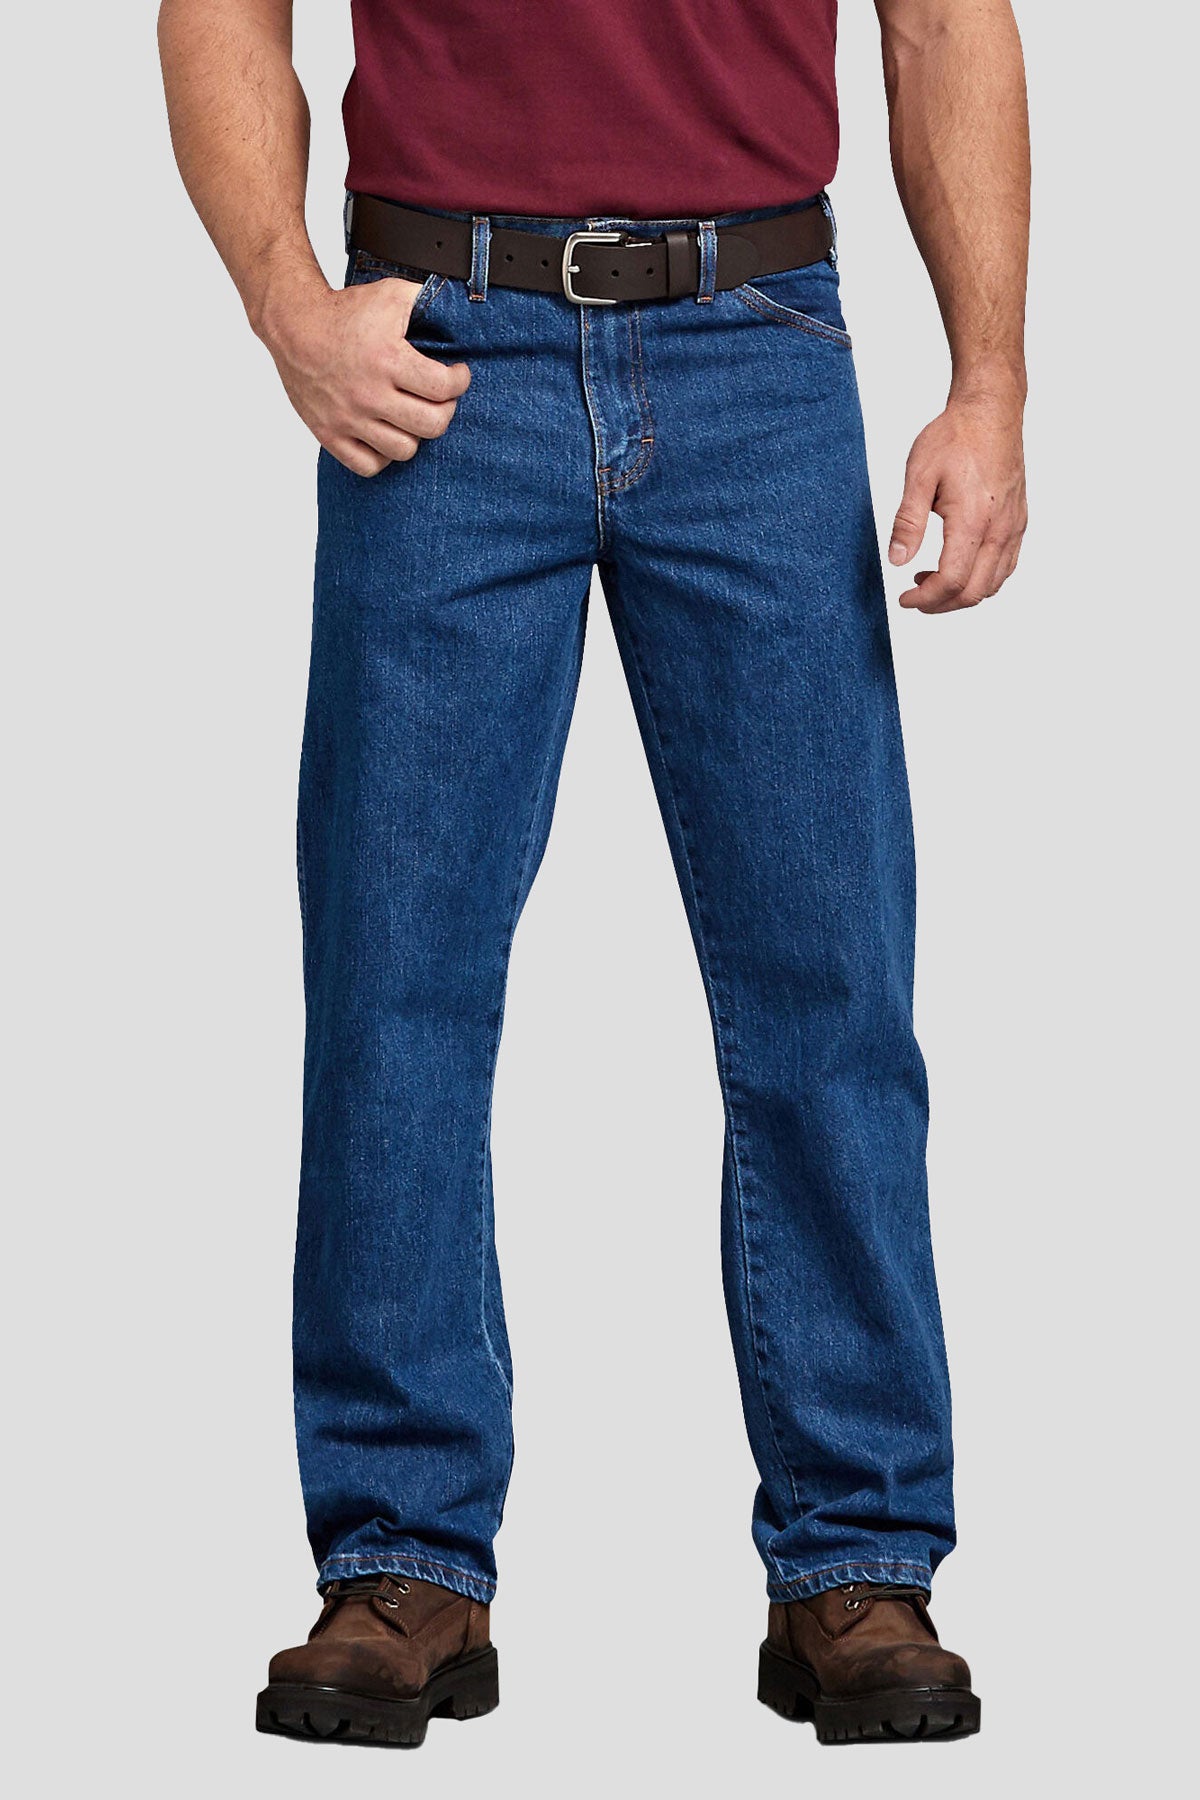 Standard Jeans